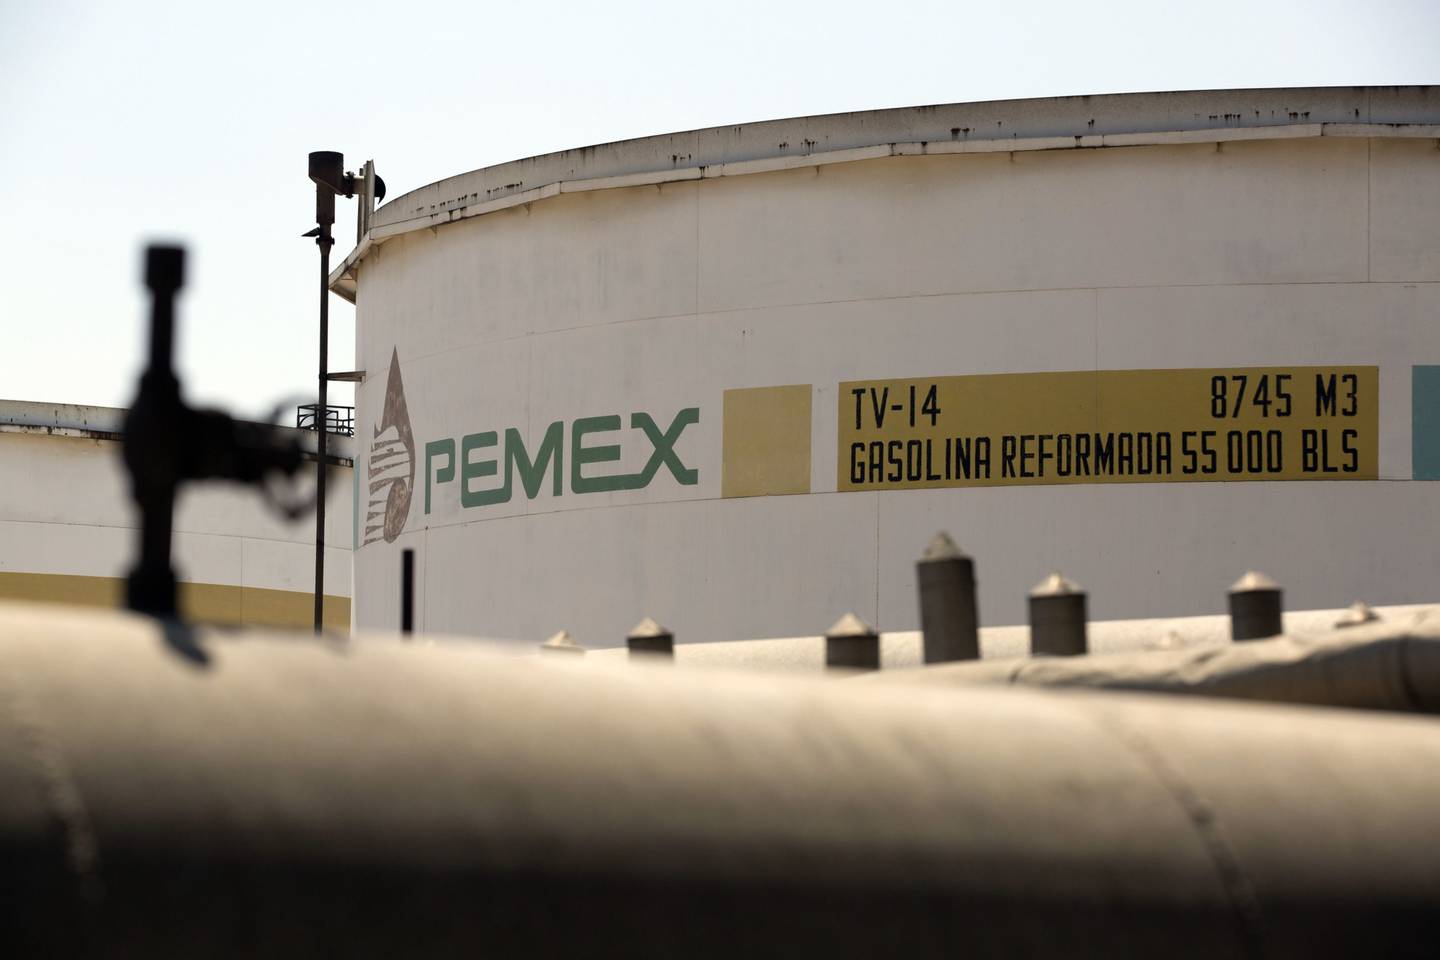 Los productores como México actúan como un tope natural para los precios en los últimos meses de la curva de futuros porque son vendedores y buscan un seguro en caso de que bajen los precios del crudo